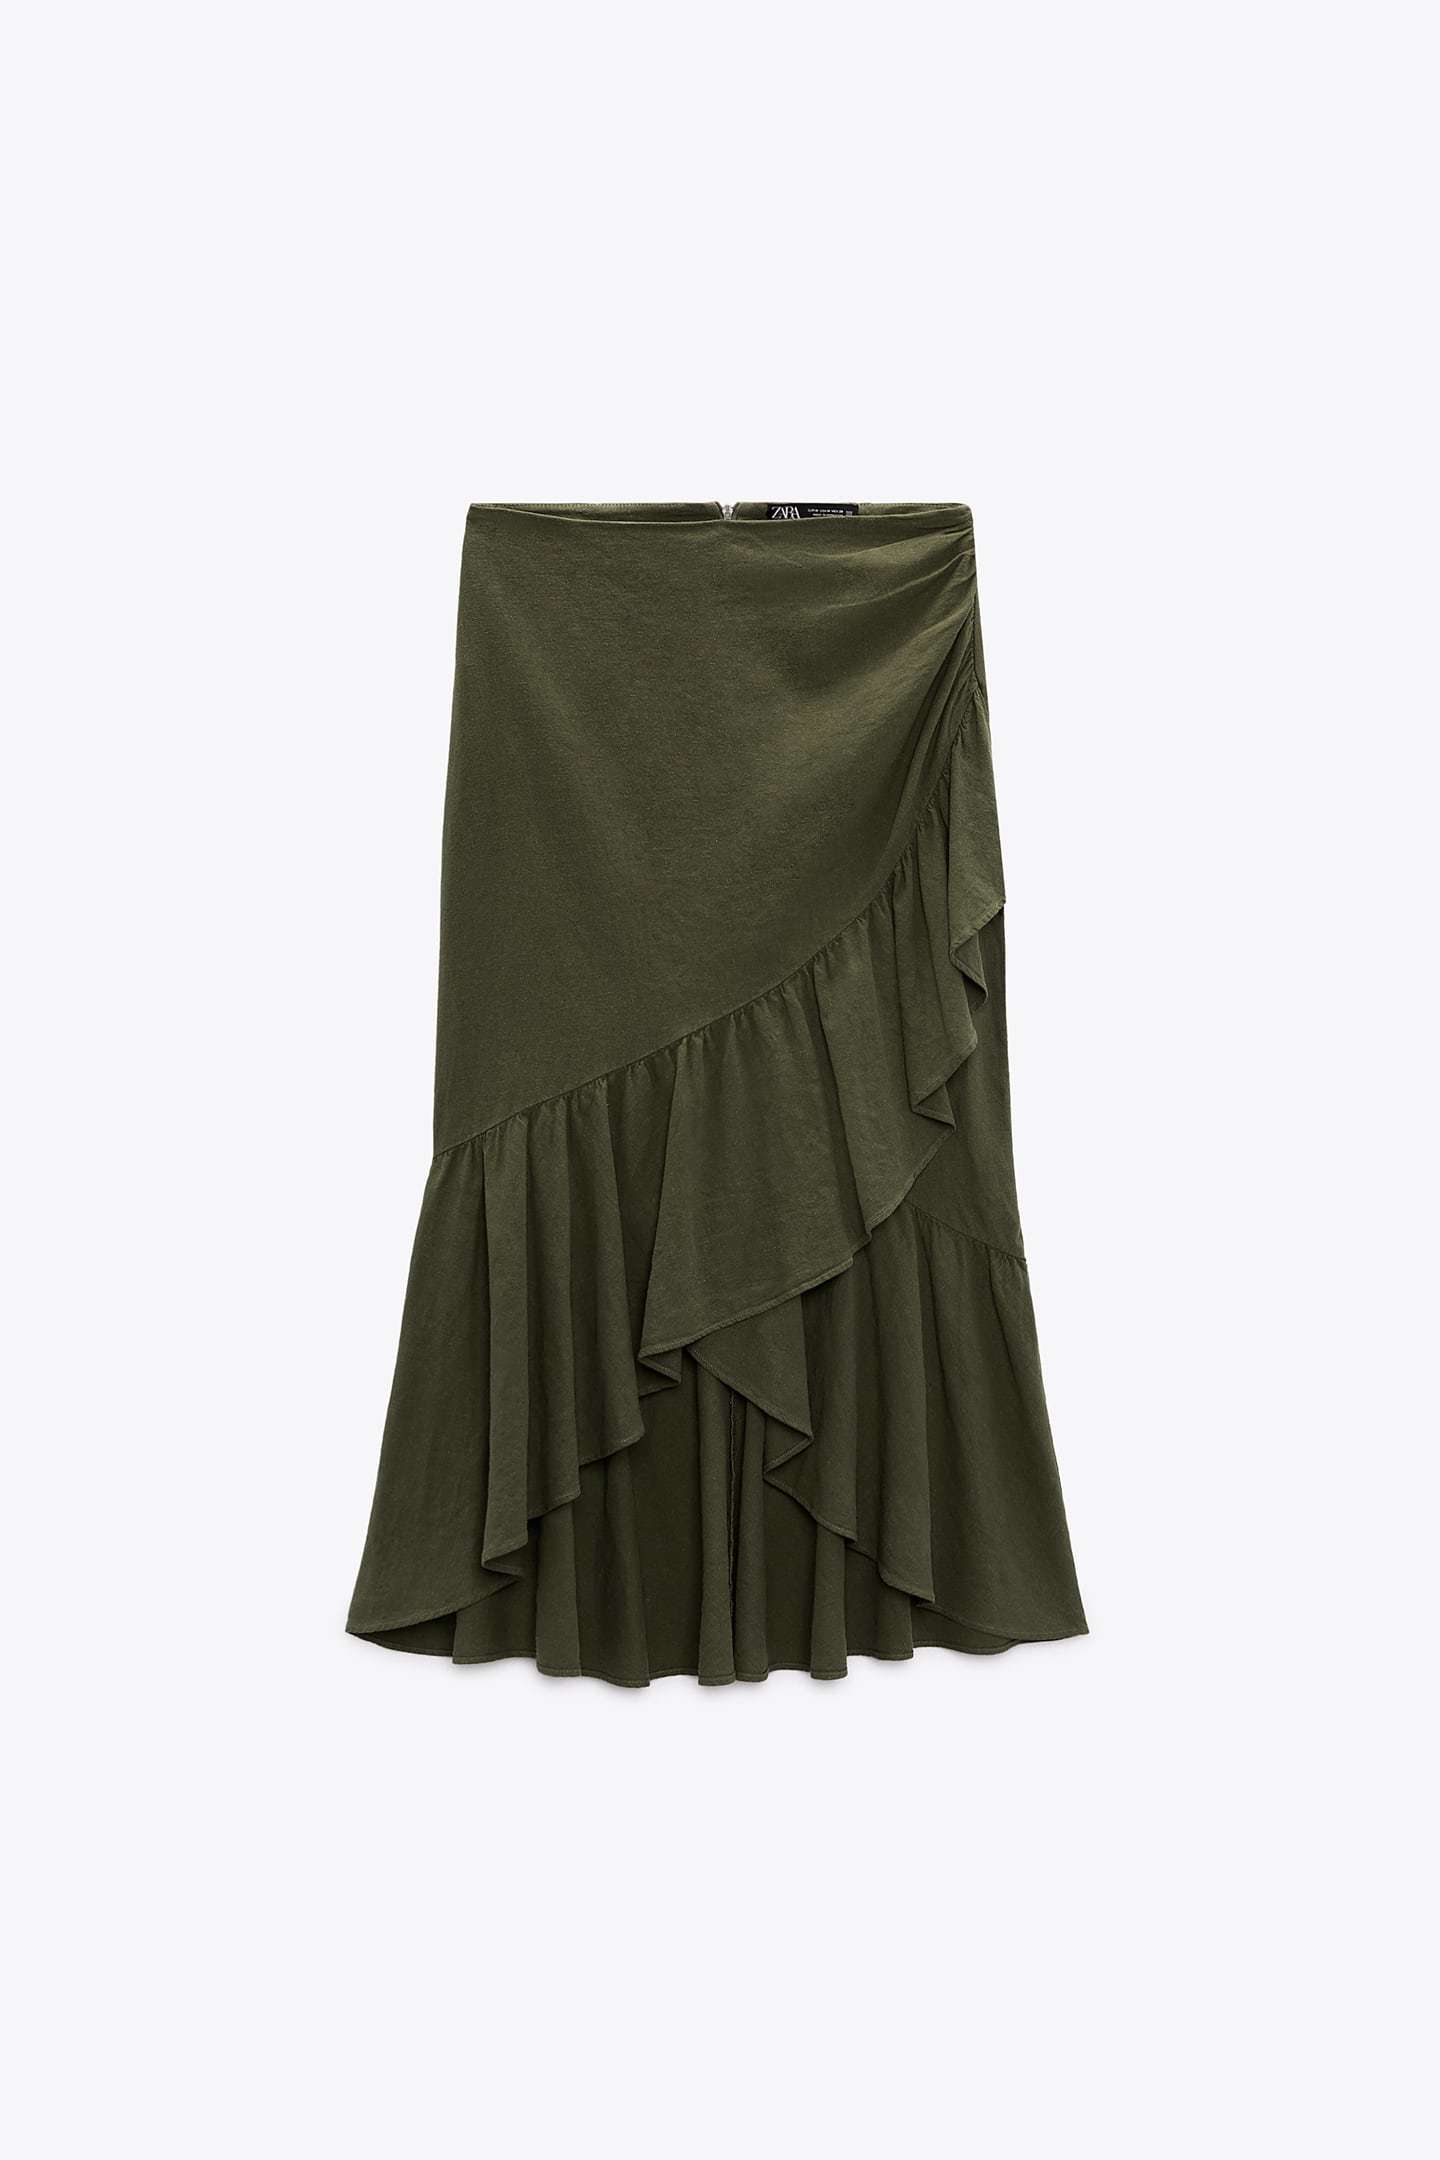 ALT: 12 faldas de Zara y Mango para la Feria de Abril que estilizan y favorecen